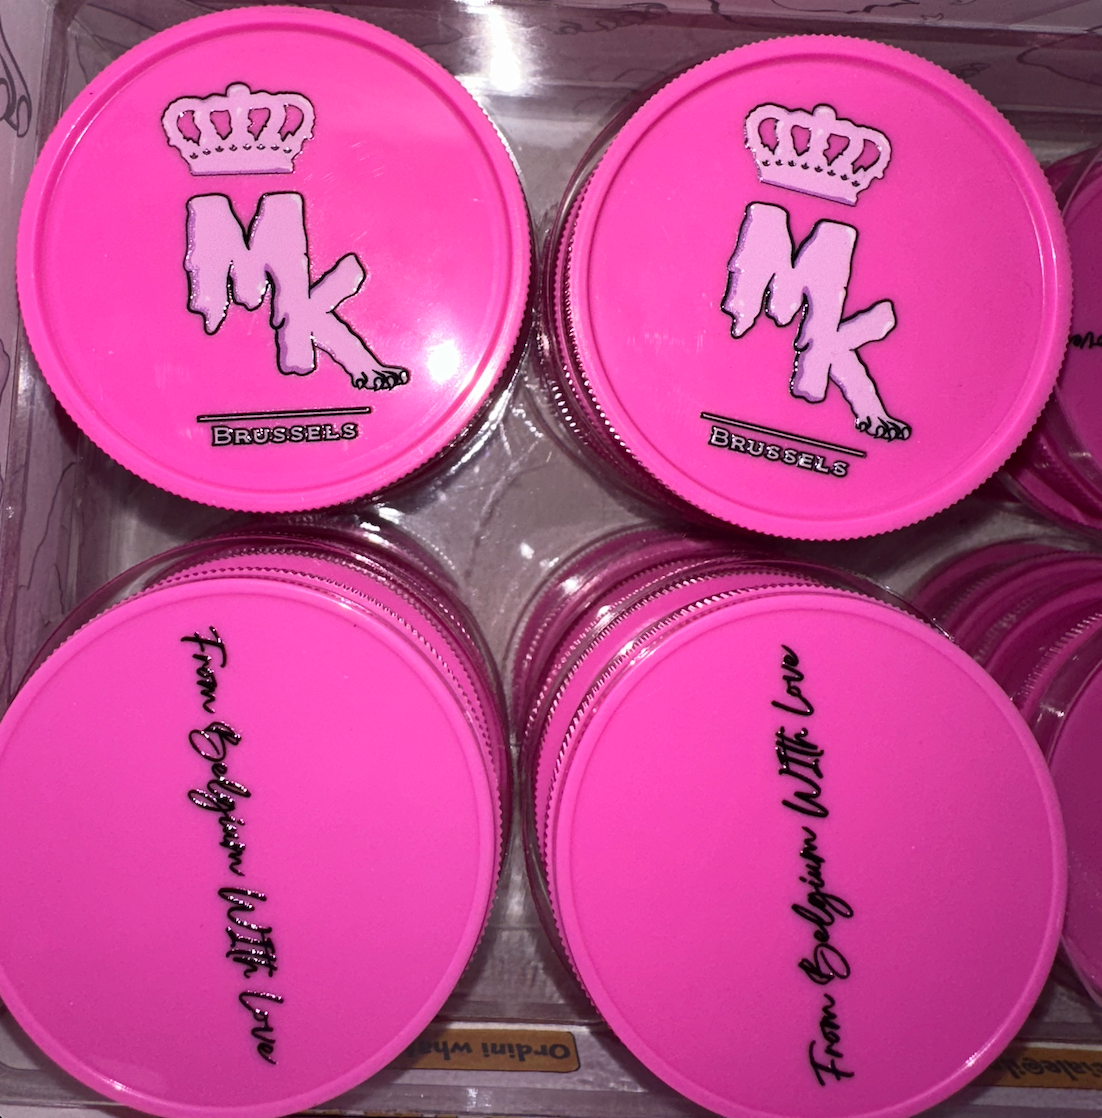 Magic King Pink Grinder Plastique - MK Melted